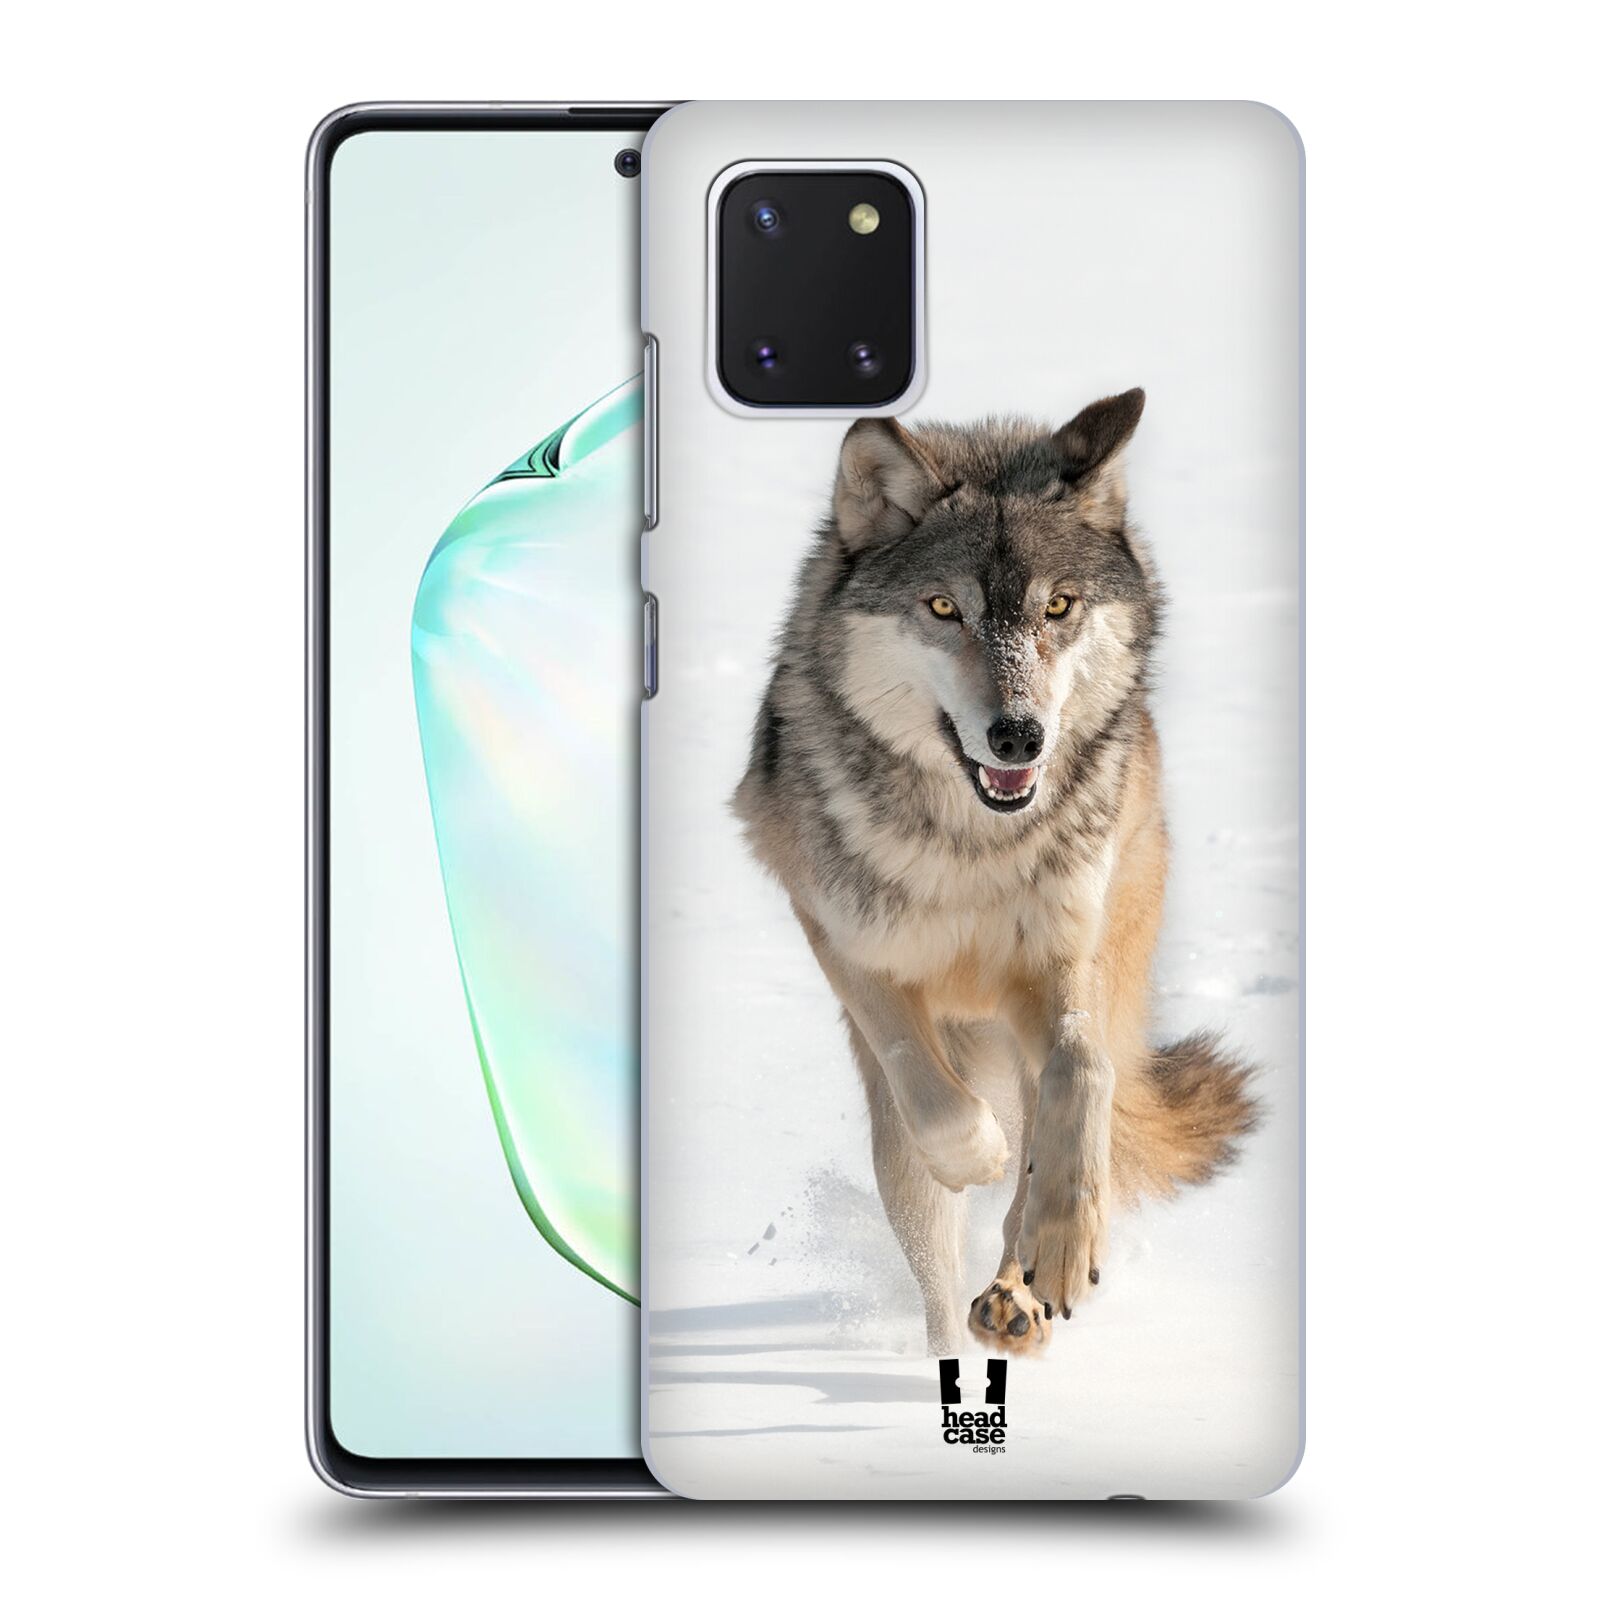 Zadní obal pro mobil Samsung Galaxy Note 10 Lite - HEAD CASE - Svět zvířat divoký vlk